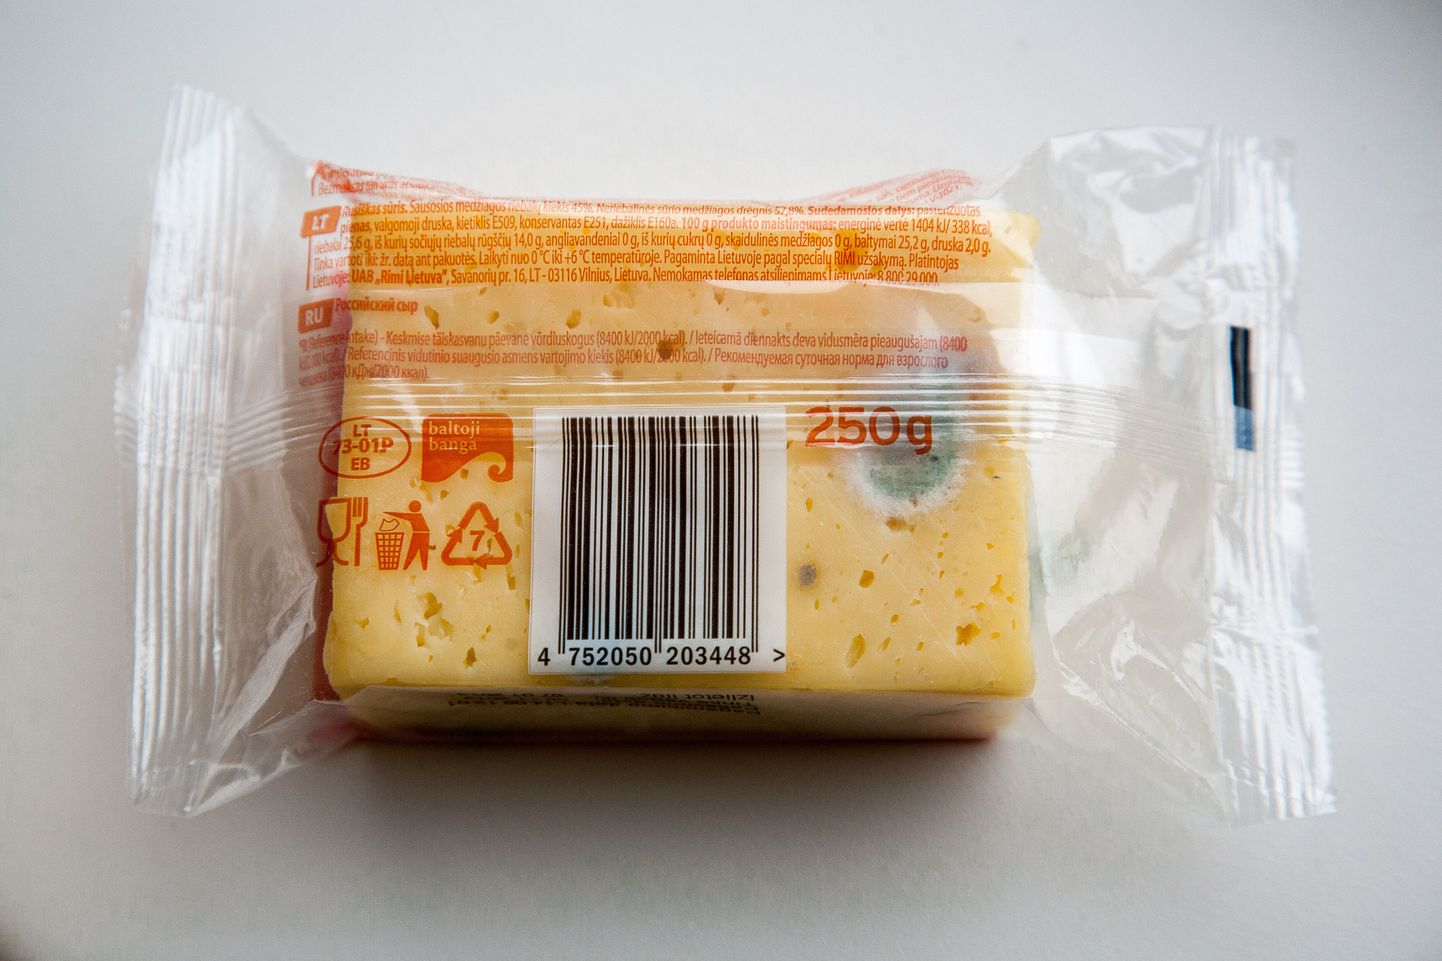 Külmikus pakendis seisnud juust hakkas hallitama.